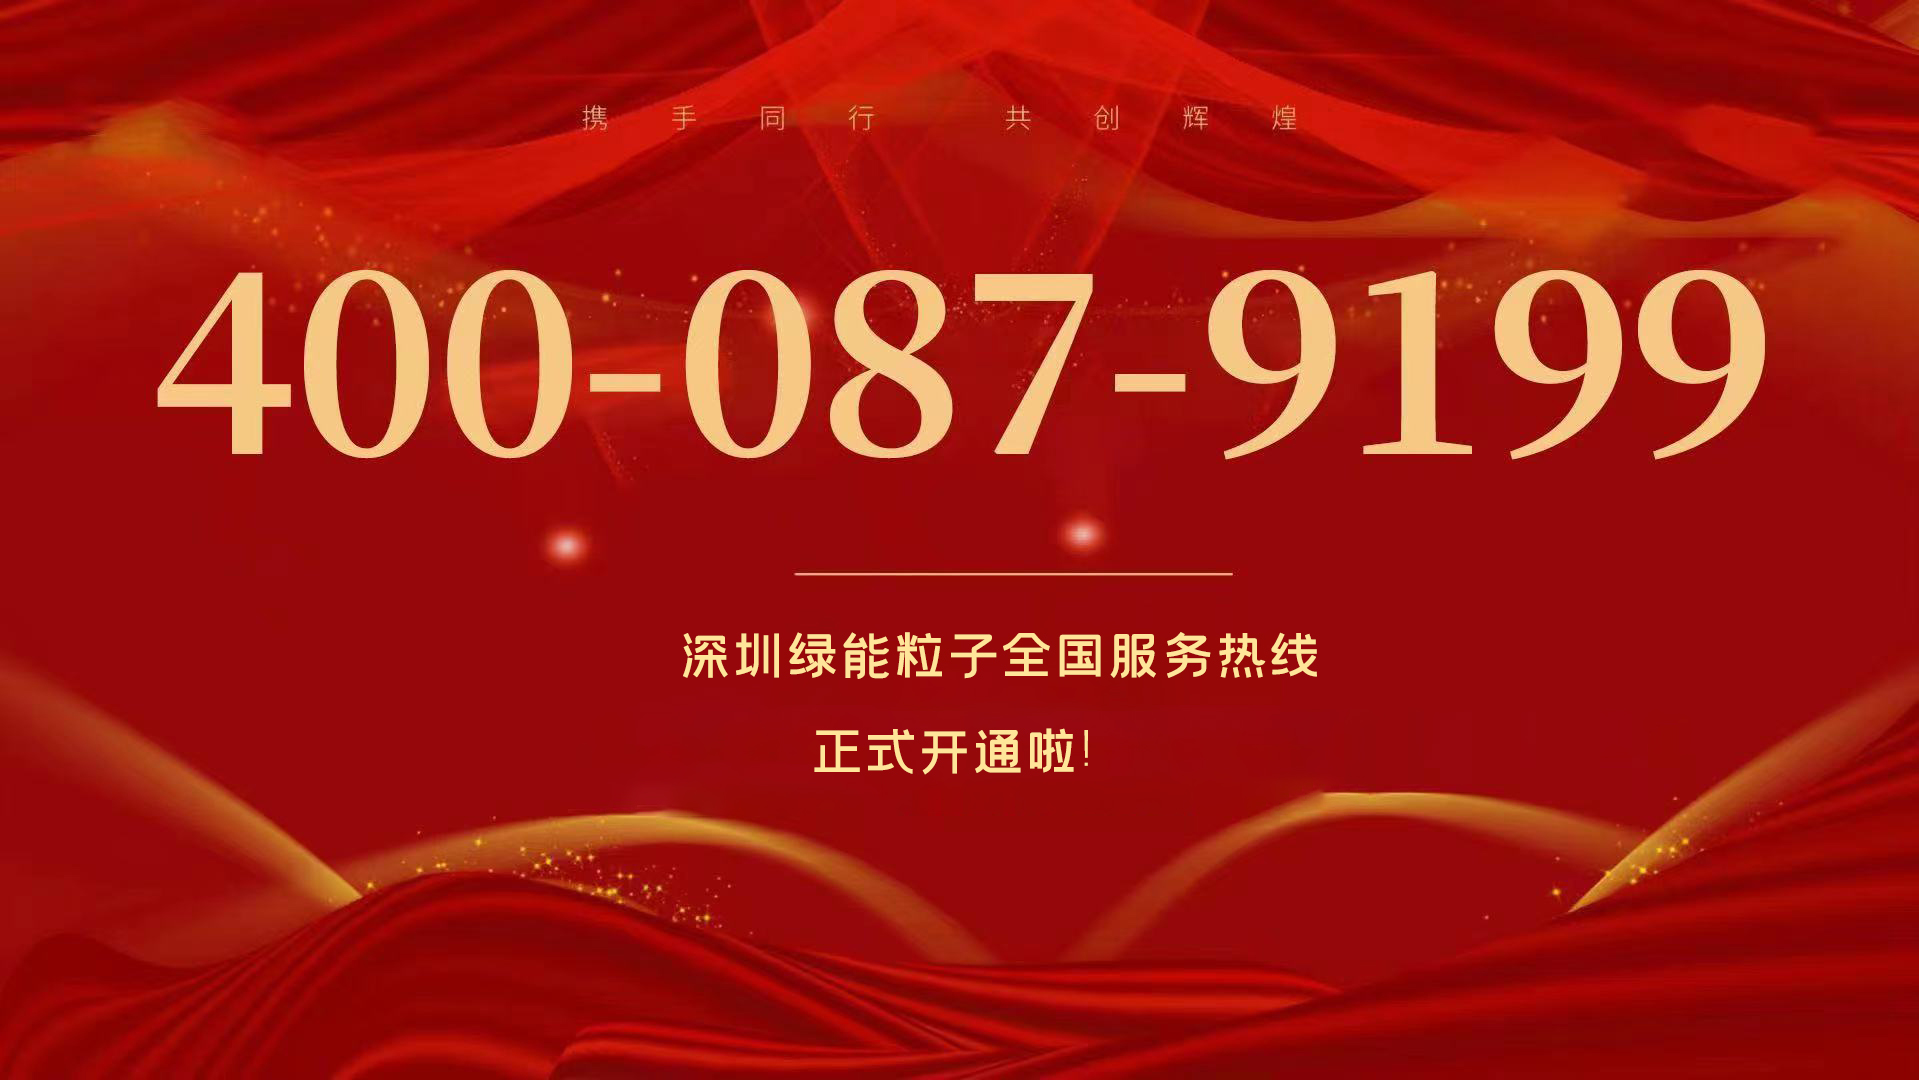  深圳凯发k8国际全国效劳热线400-087-9199正式开通啦！  